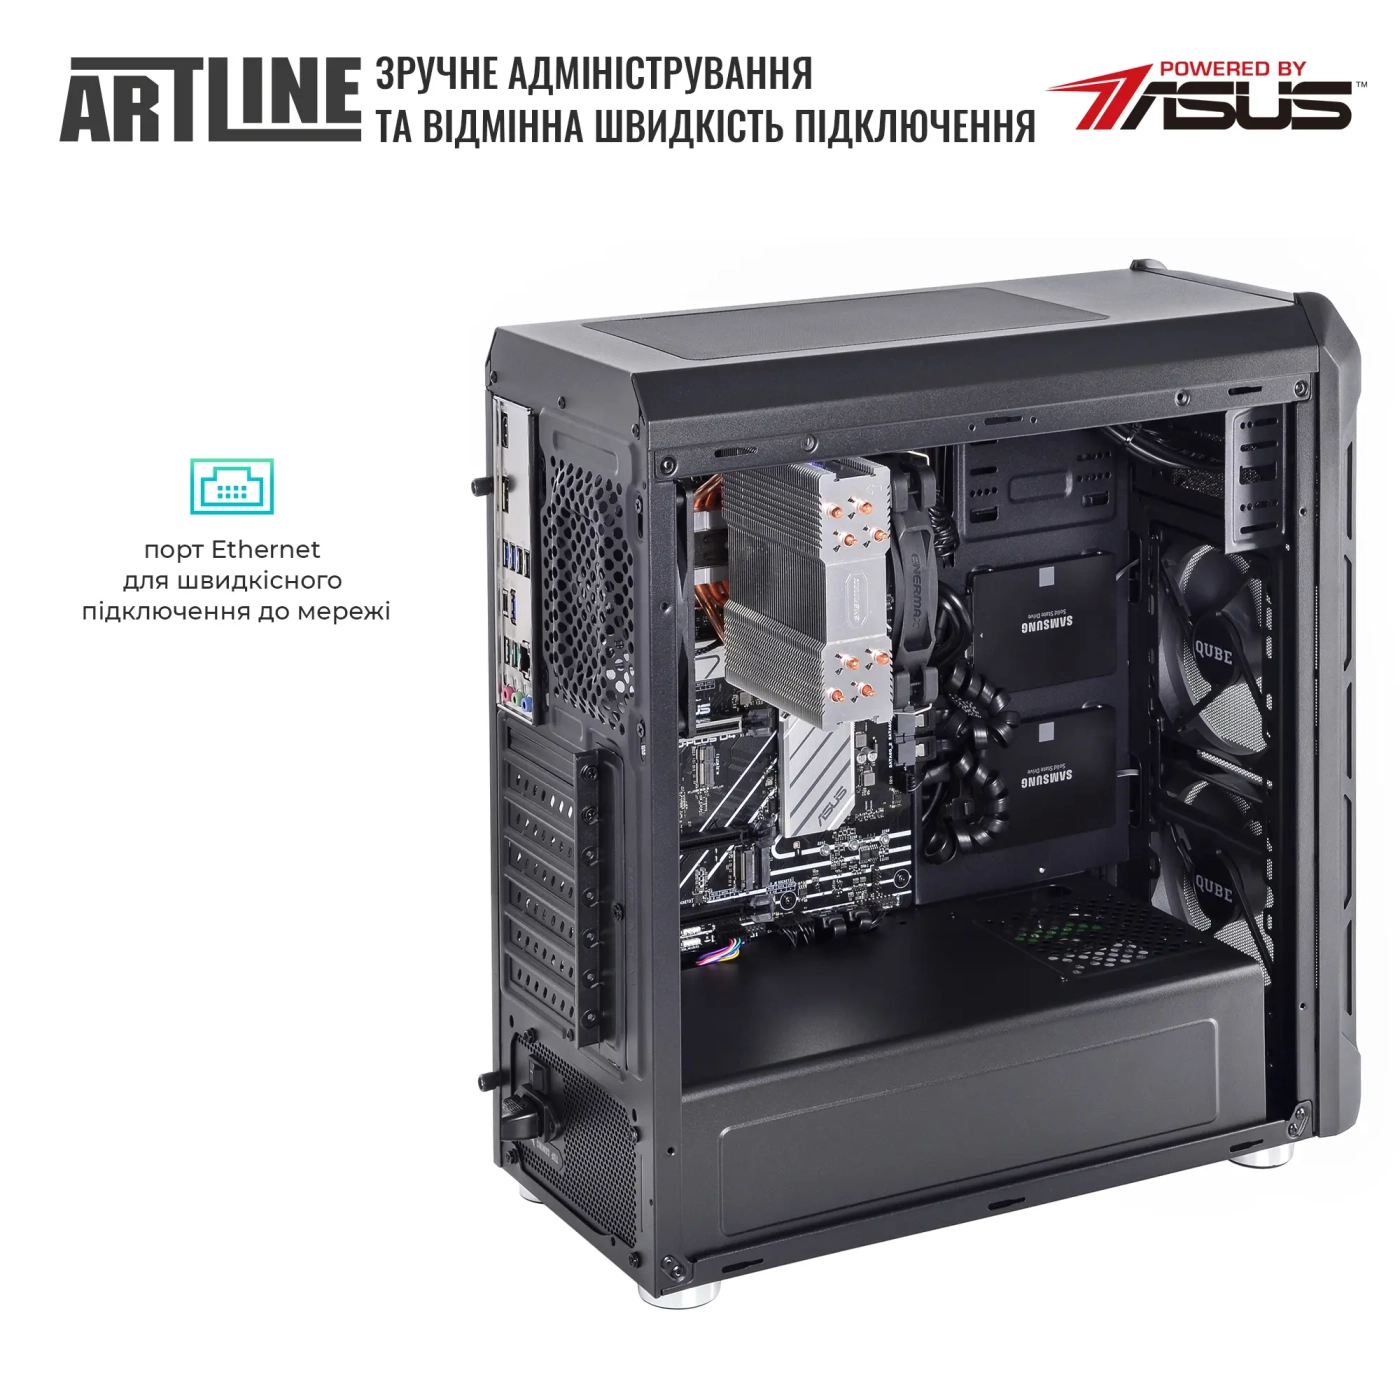 Купить Сервер ARTLINE Business T27 (T27v38) - фото 7